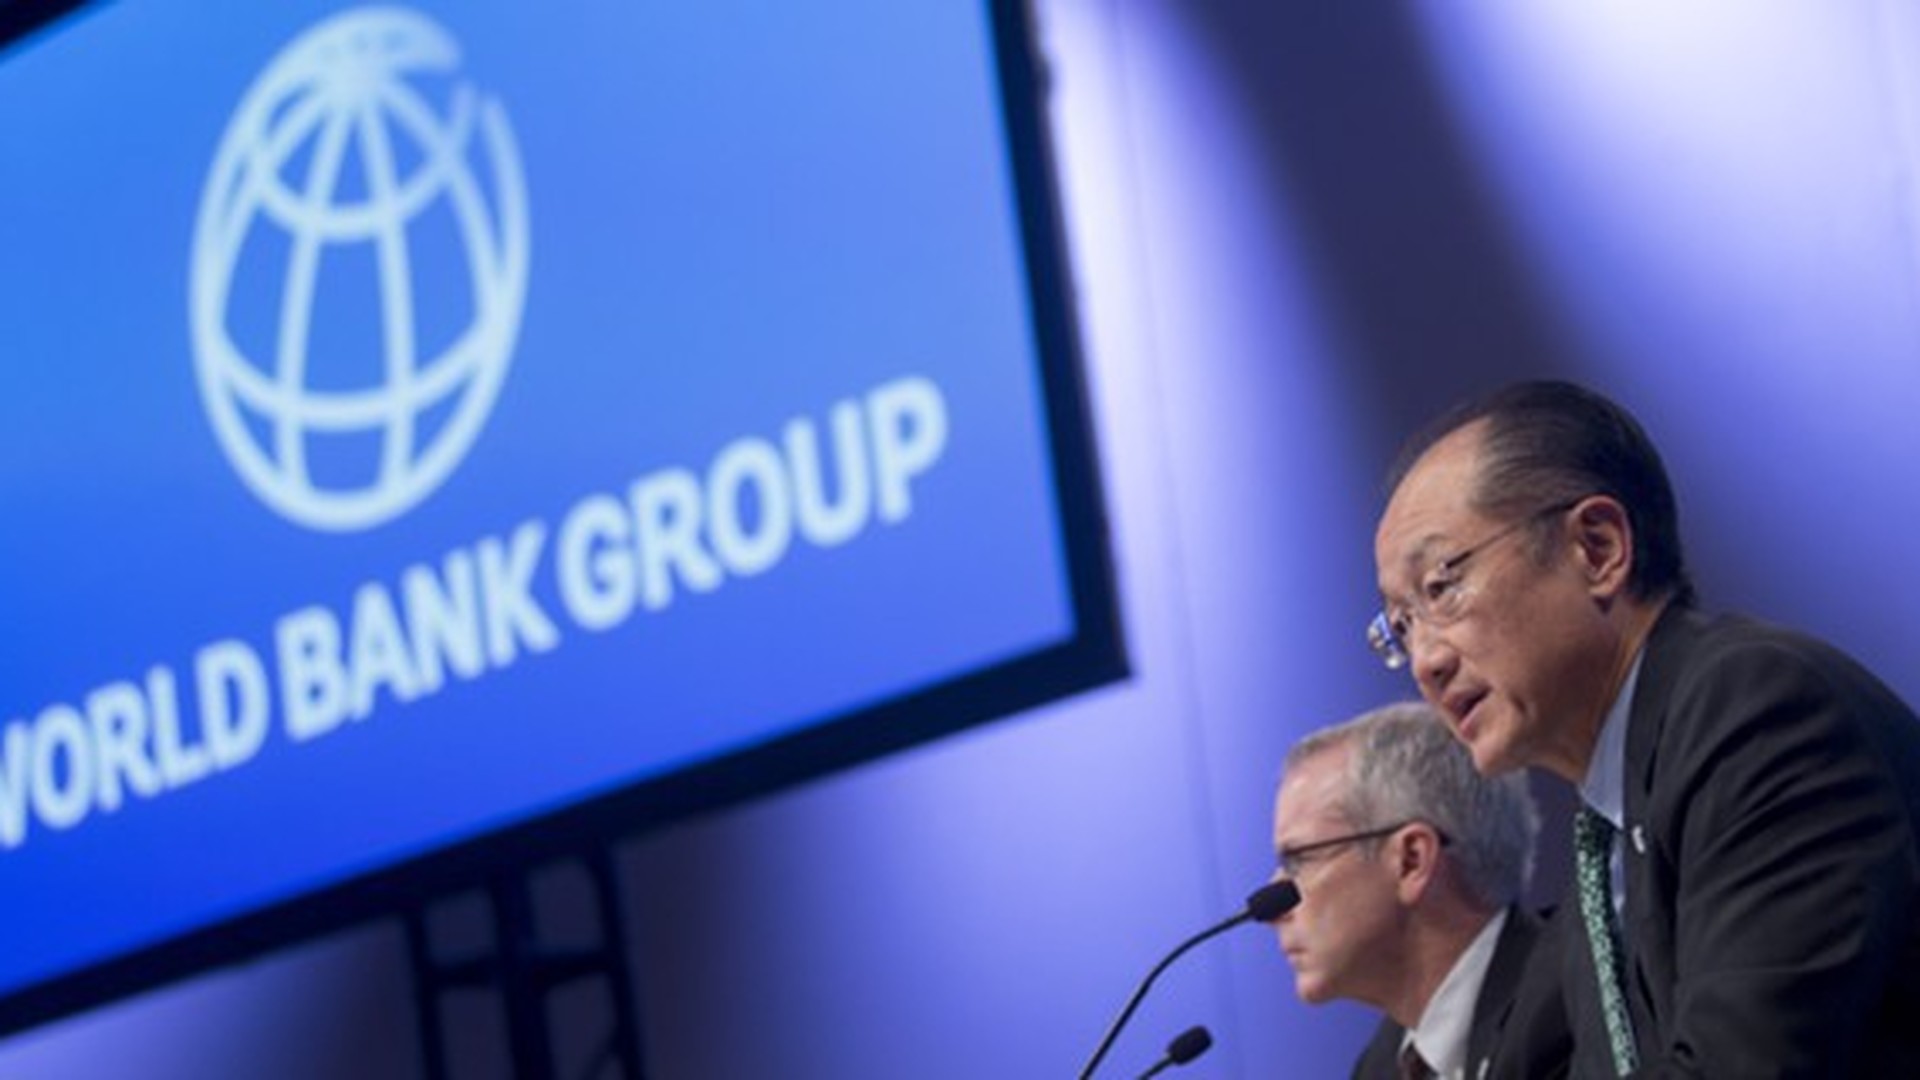 Фонд всемирный банк. Всемирный банк. Группа Всемирного банка фото. Группа Всемирного банка ООН. Флаг Всемирного банка.